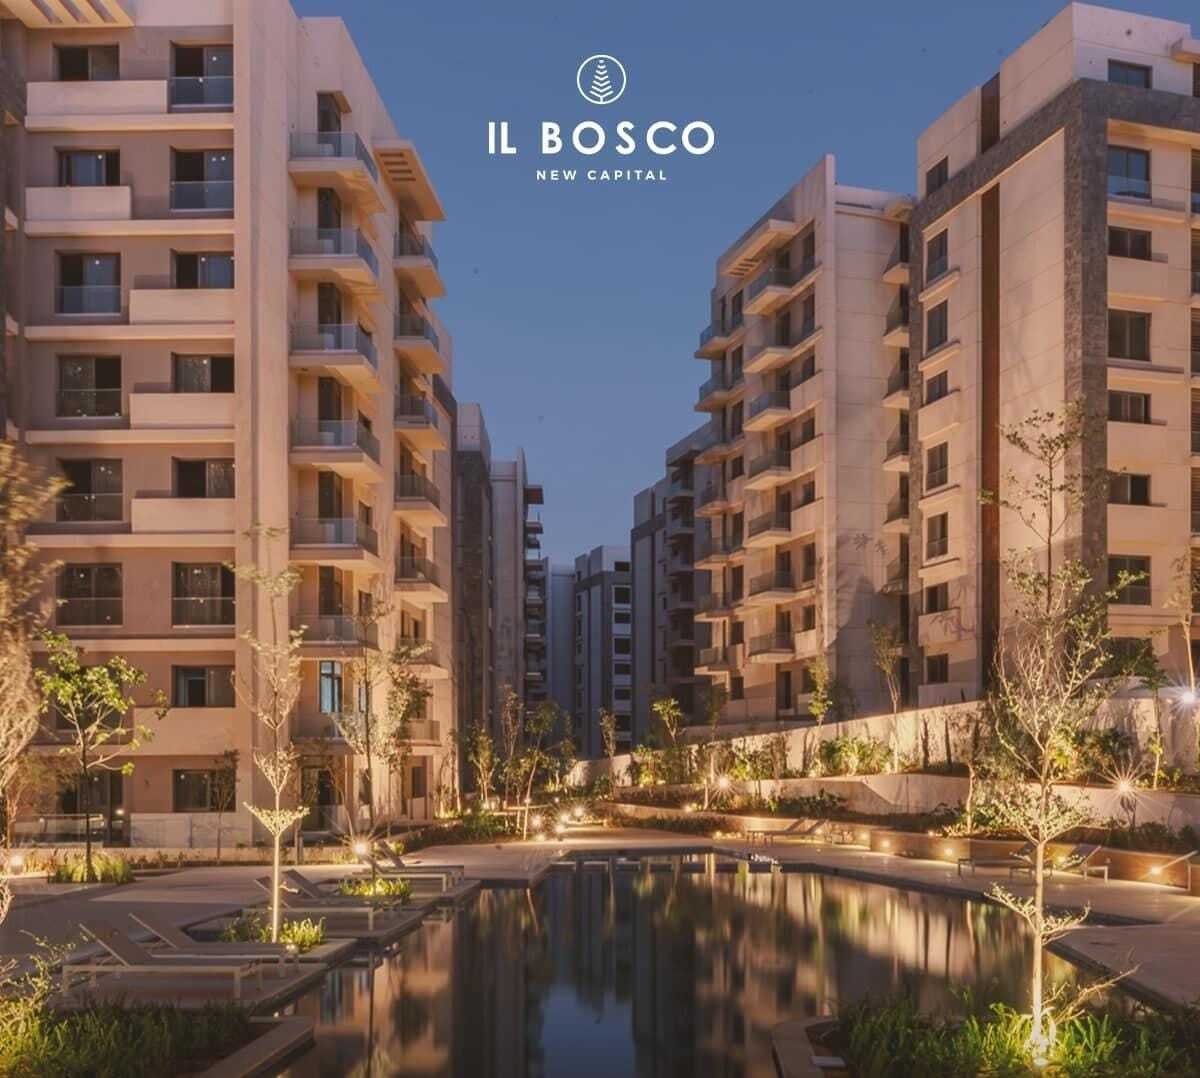 شقة للبيع بالعاصمة الإدارية الجديدة مساحة 150متر في كمبوند IL BOSCO | THE PEAK PROPERTIES